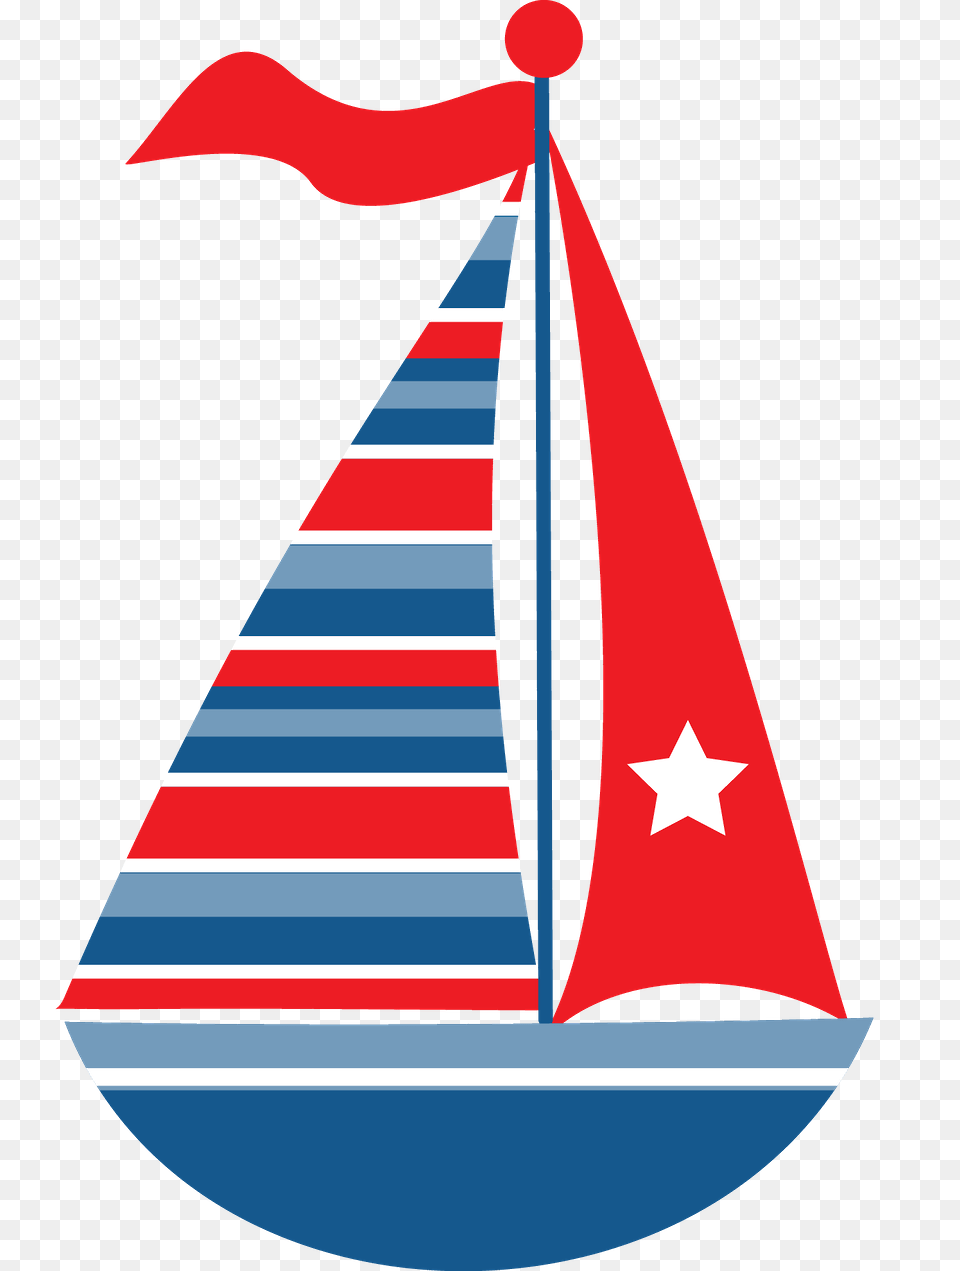 Marinheiro, Clothing, Hat, Boat, Sailboat Png